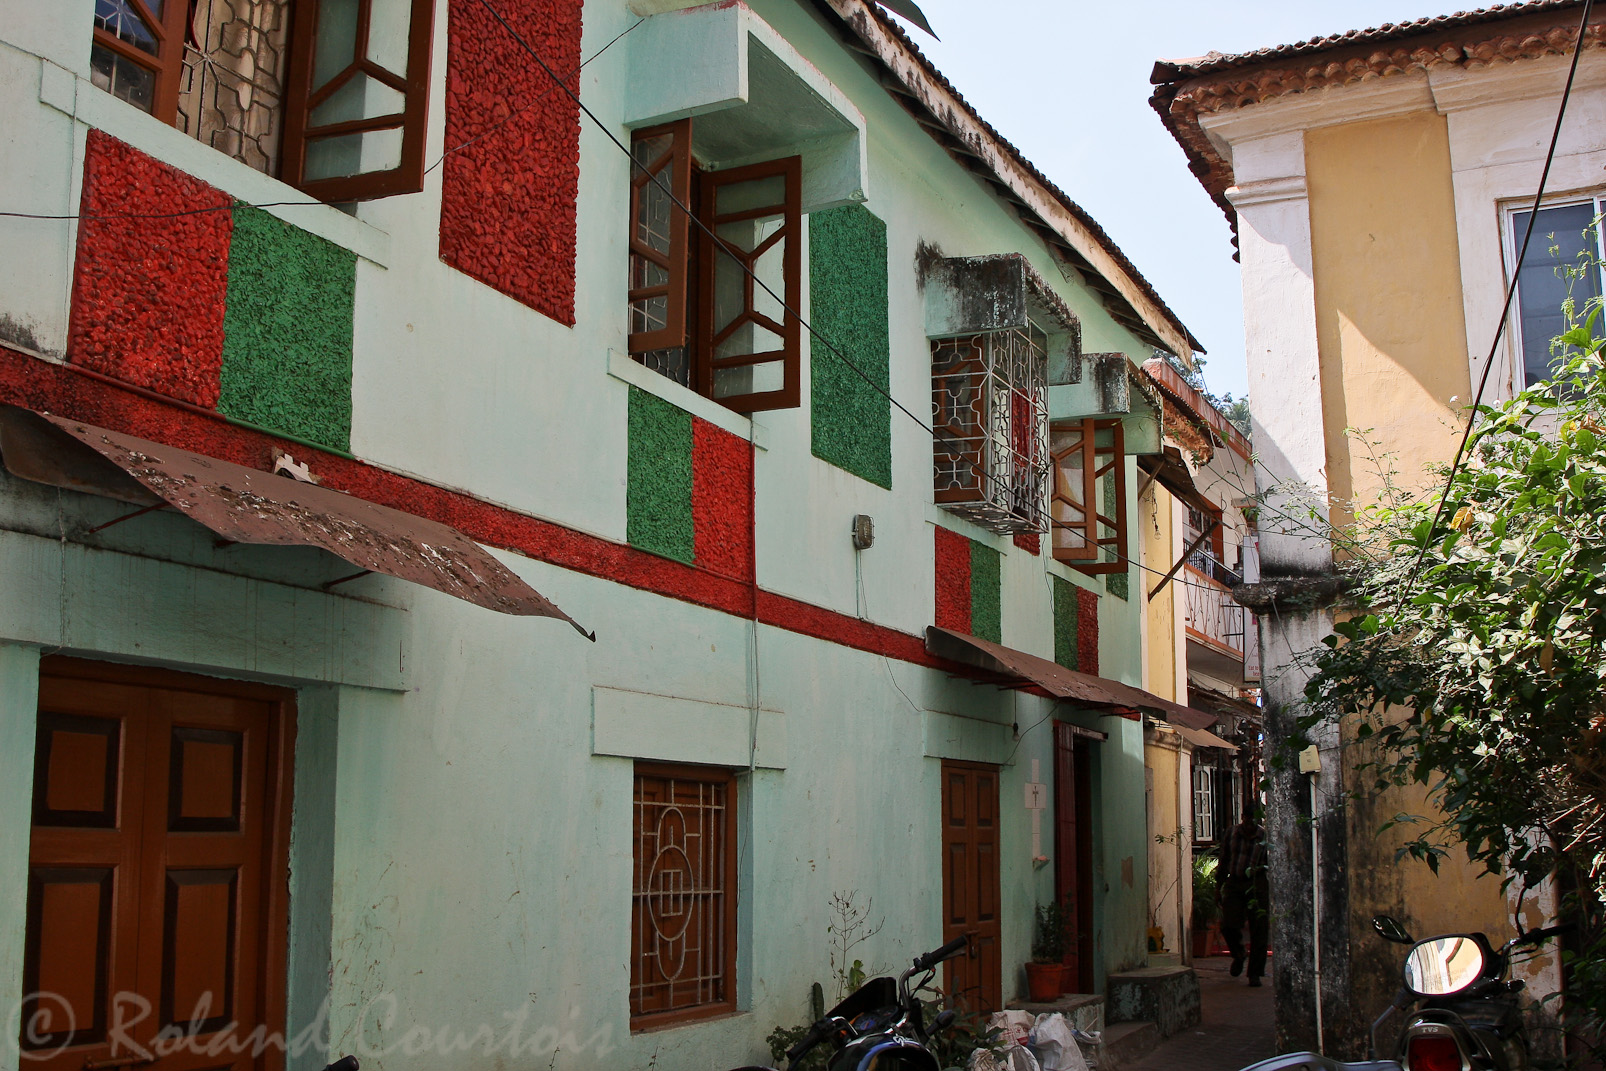 Même les couleurs du Portugal se retrouvent sur les façades.